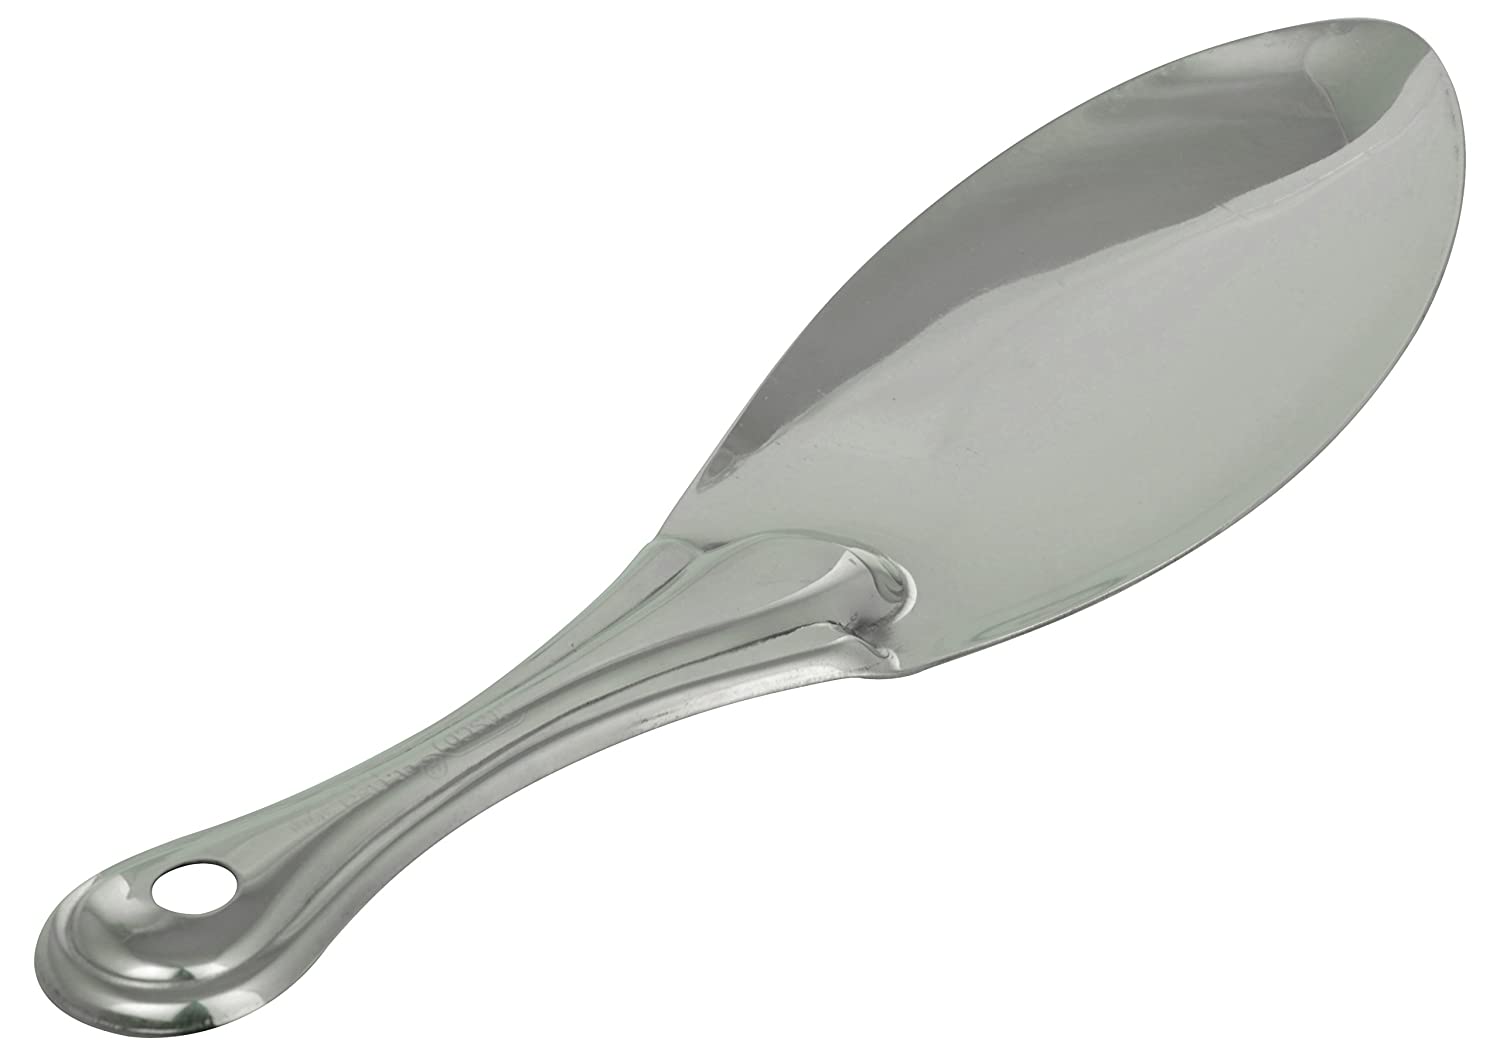 Rice spoon